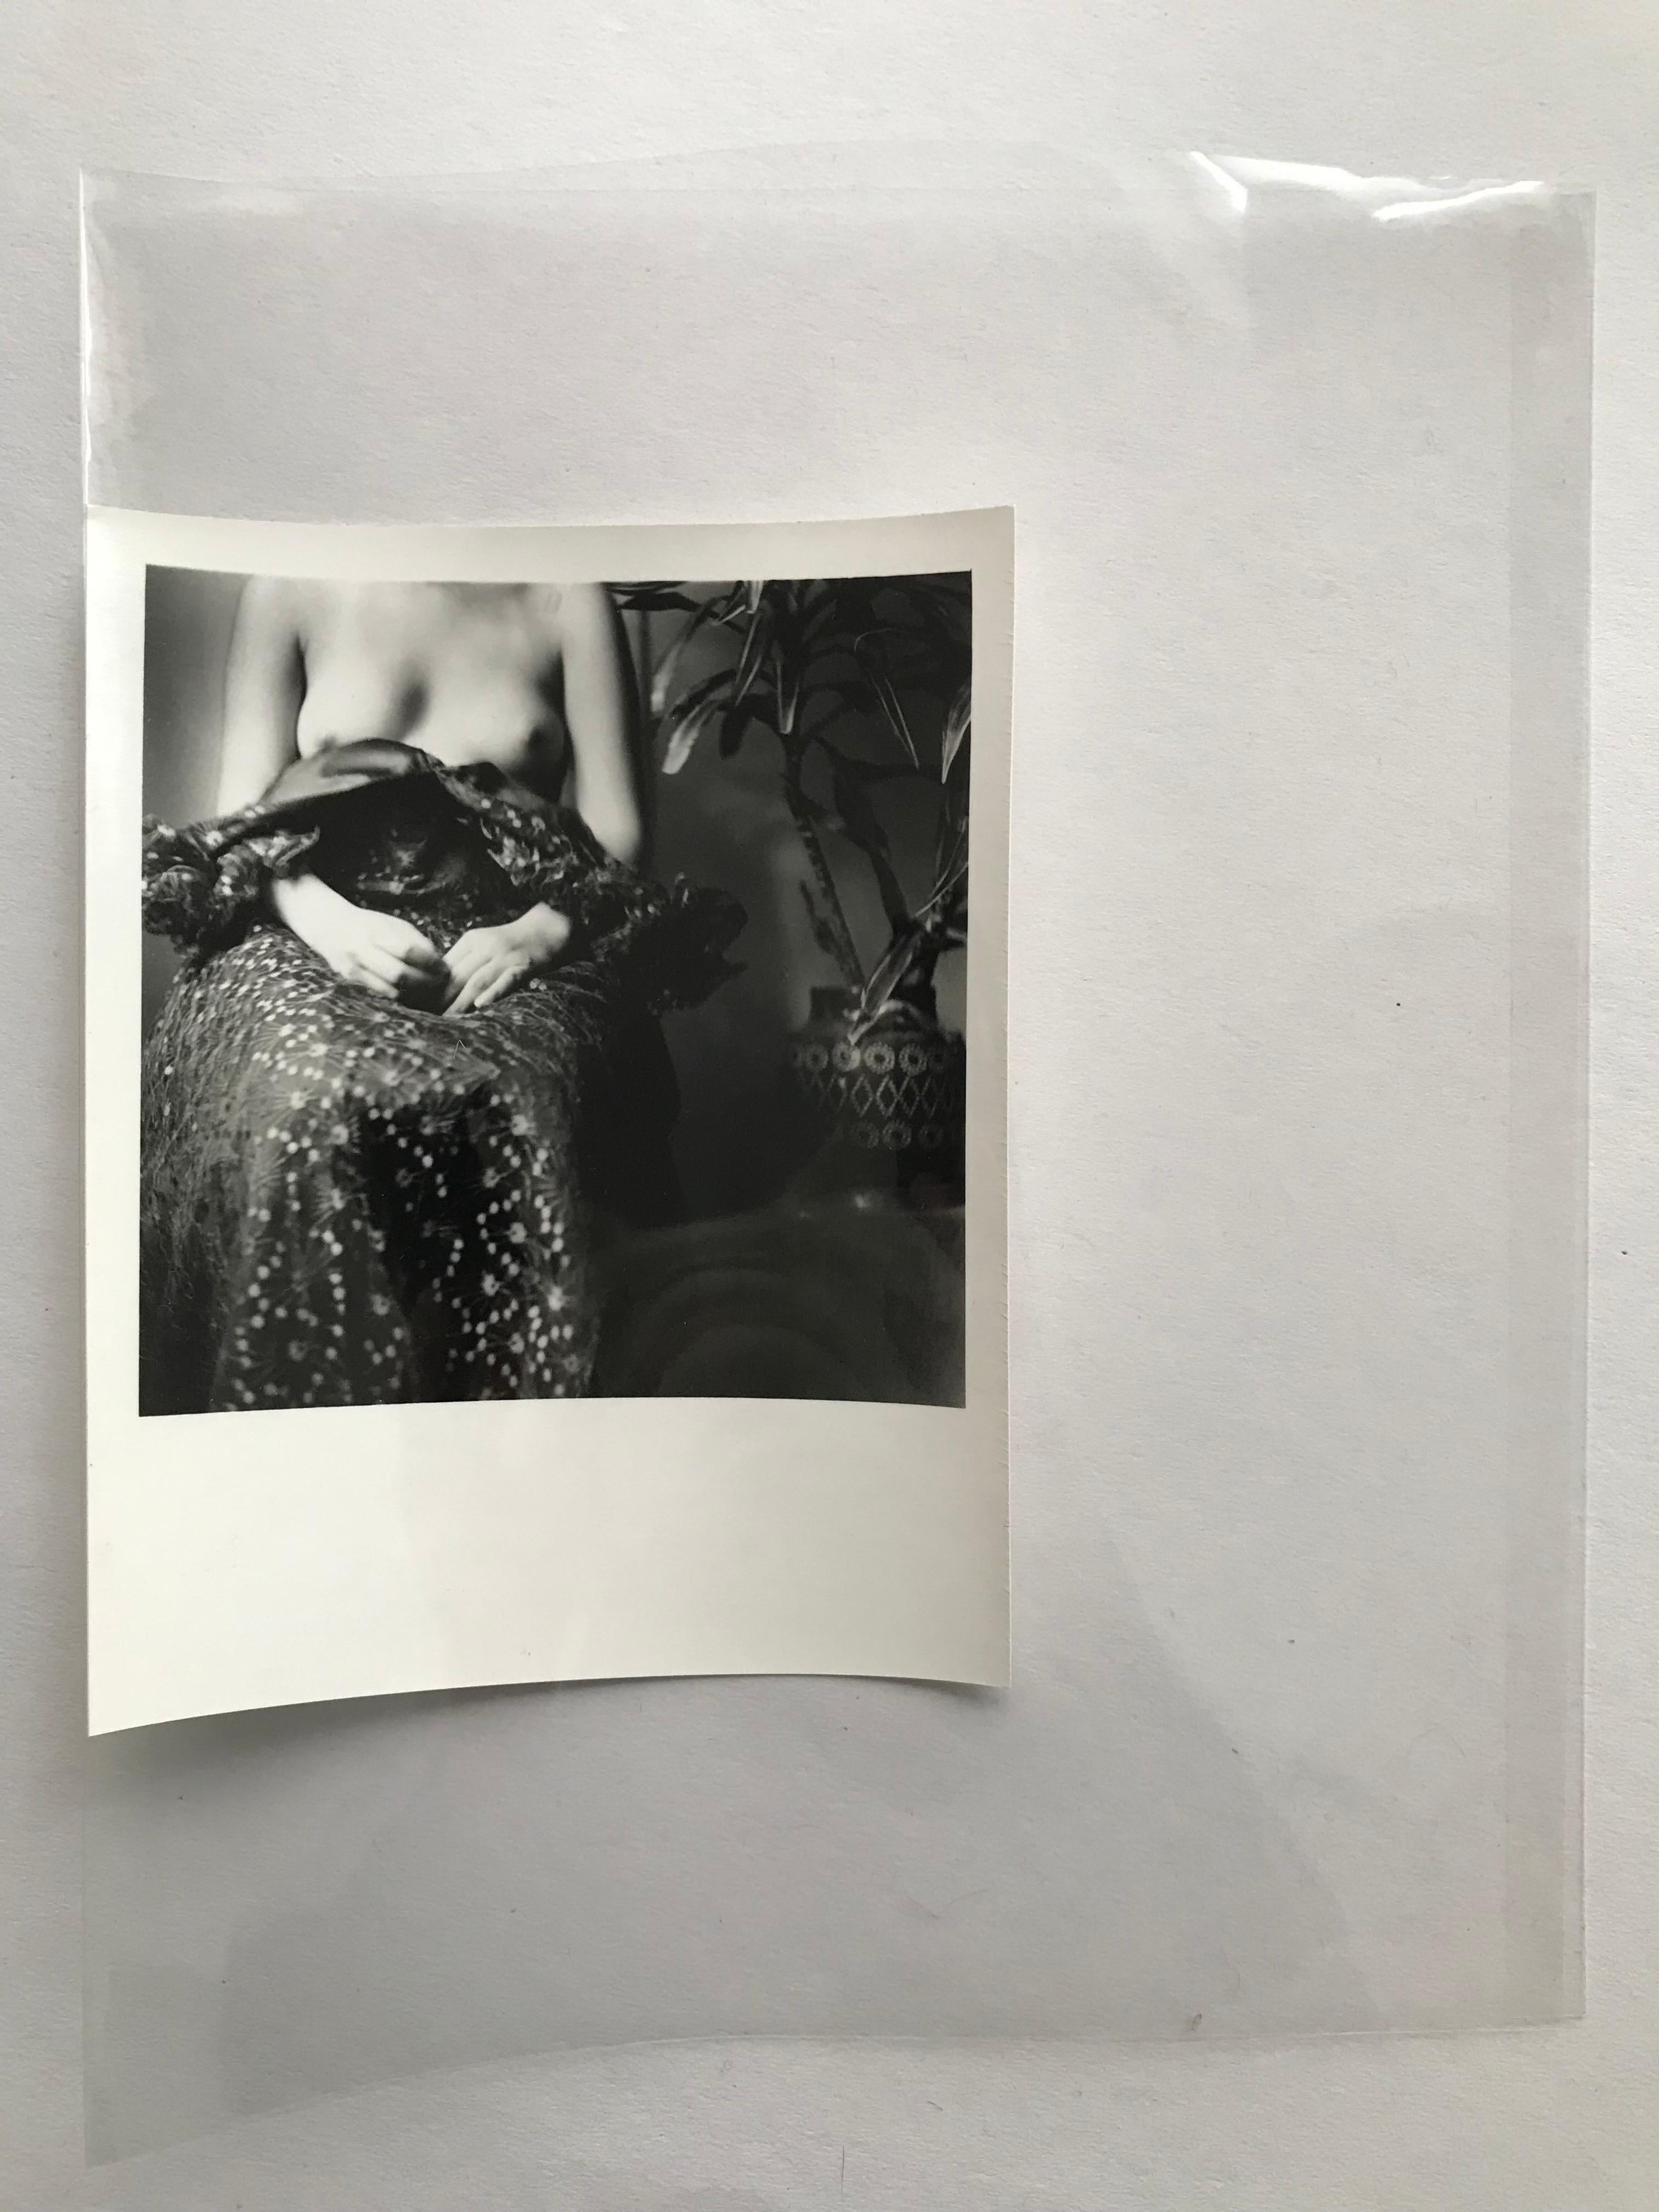 San Rafael par Paola Dávila
Photographie imprimée analogiquement sur du papier photographique en fibre barytée 255 gr tourné au sélénium.
Taille de l'image : 11,3 cm de haut x 11,2 cm de large.
Taille du papier : 16 cm de haut x 12,5 cm de